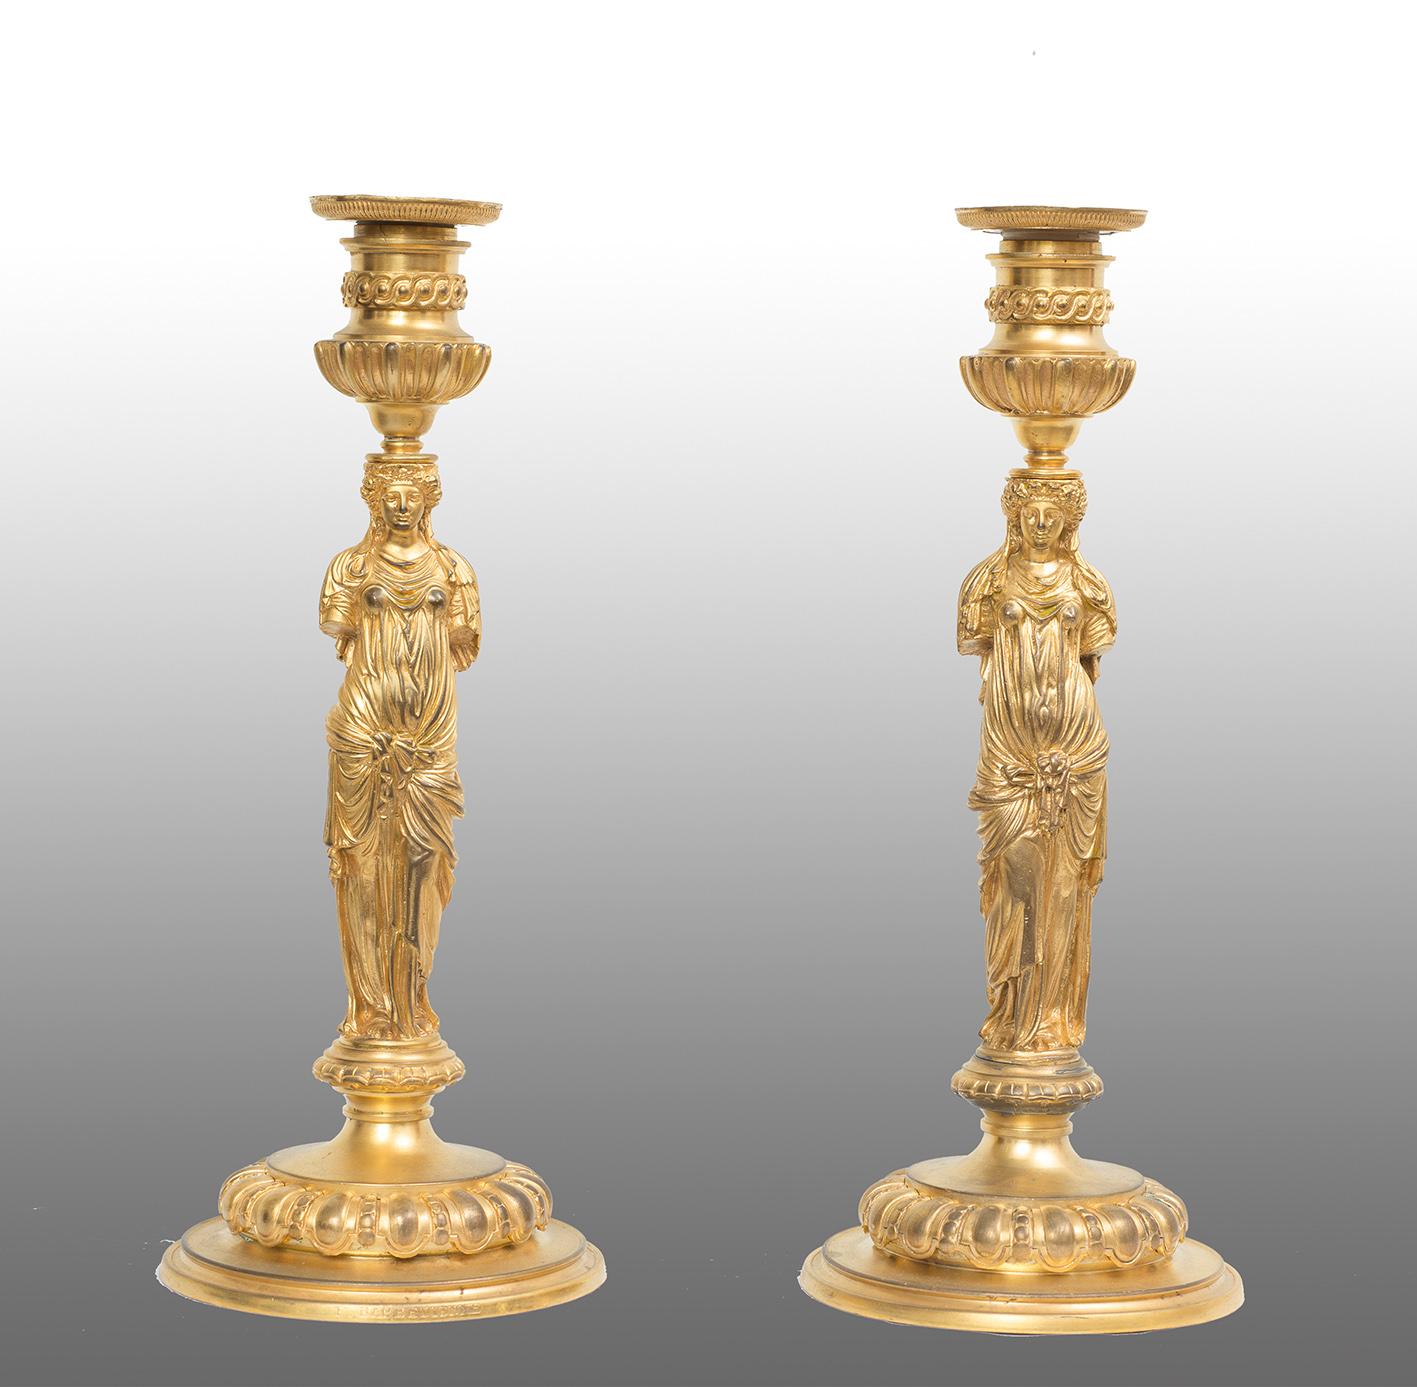 Figurative Sculpture de Unknown - Pareja de antiguos candelabros Imperio francés firmados 'Barbedienne'.